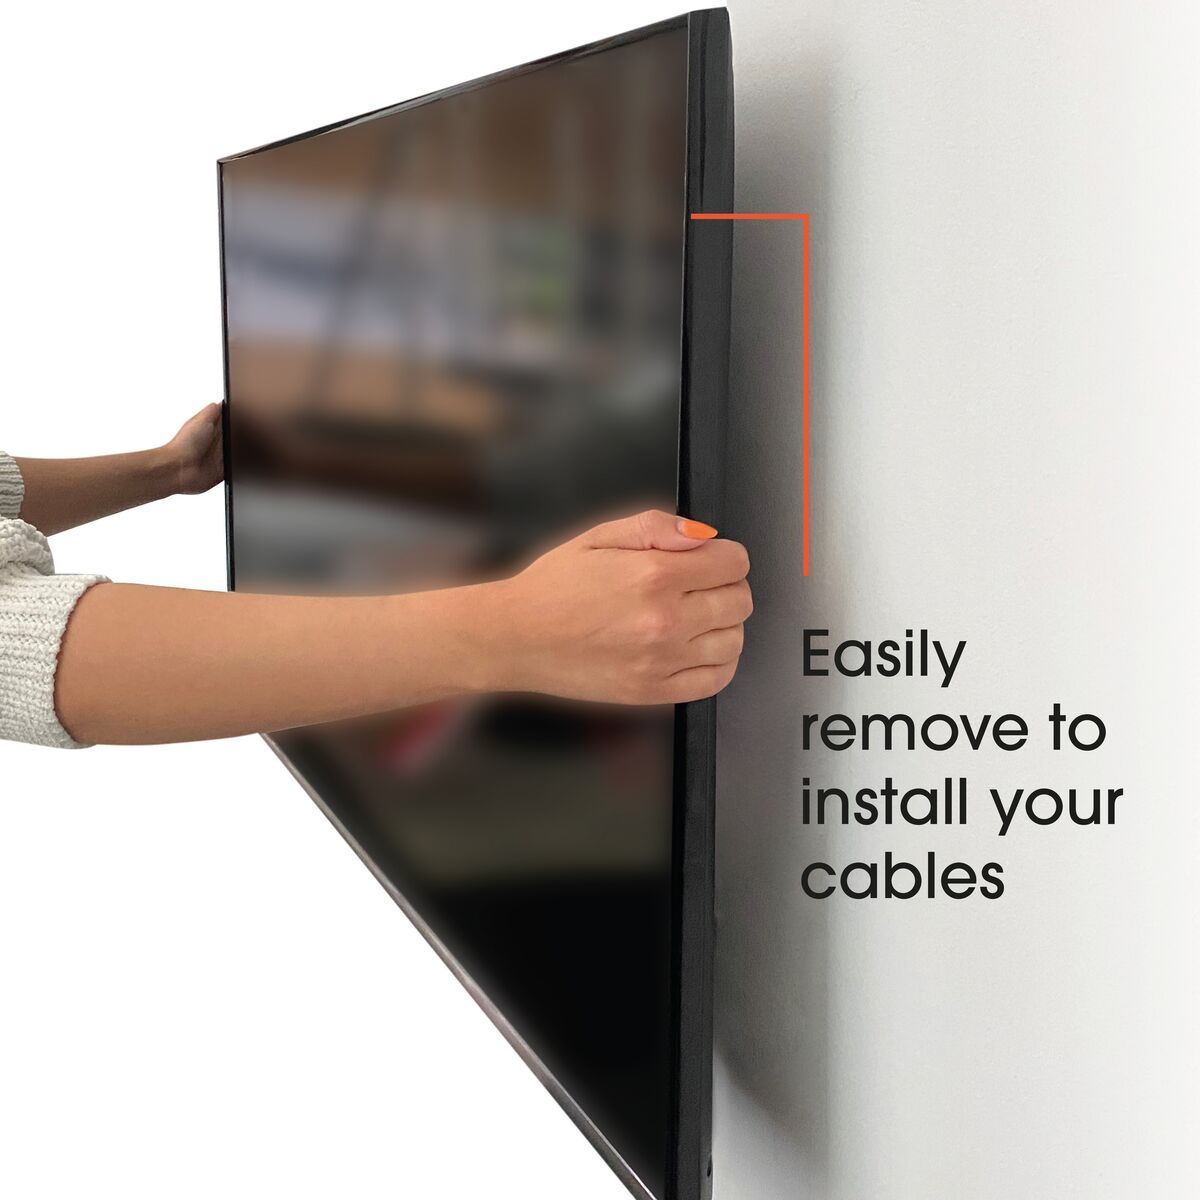 Vogel's MA4000 Flache TV-Wandhalterung - Geeignet für Fernseher von 40 bis 80 Zoll und einem Gewicht bis zu USP